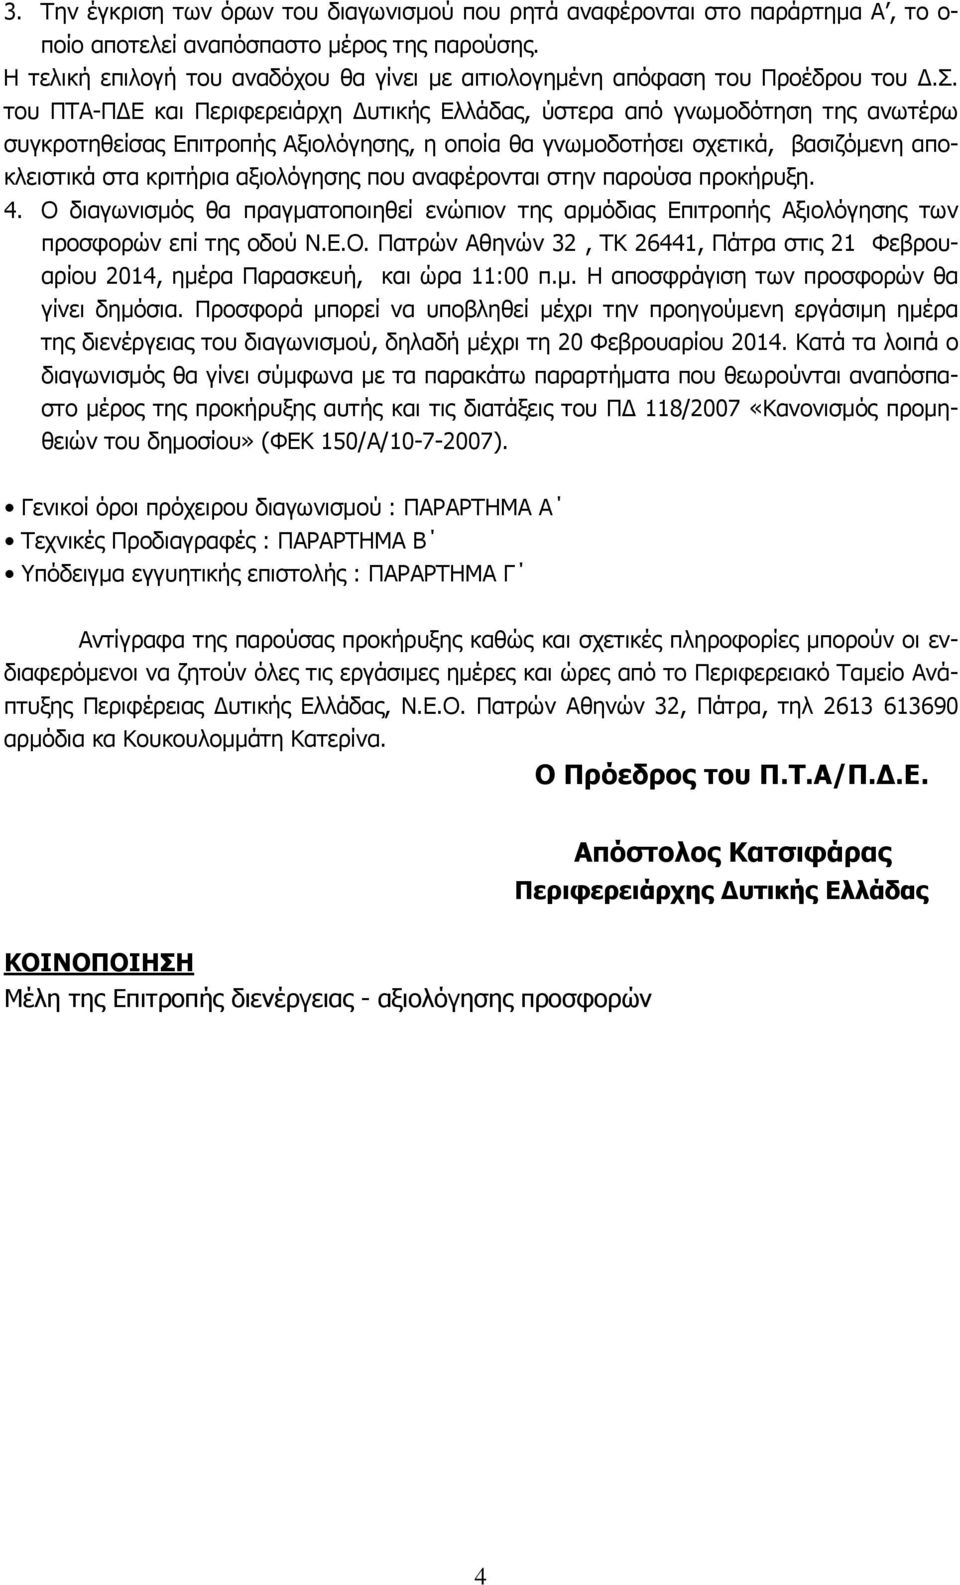 του ΠΤΑ-ΠΔΕ και Περιφερειάρχη Δυτικής Ελλάδας, ύστερα από γνωμοδότηση της ανωτέρω συγκροτηθείσας Επιτροπής Αξιολόγησης, η οποία θα γνωμοδοτήσει σχετικά, βασιζόμενη αποκλειστικά στα κριτήρια